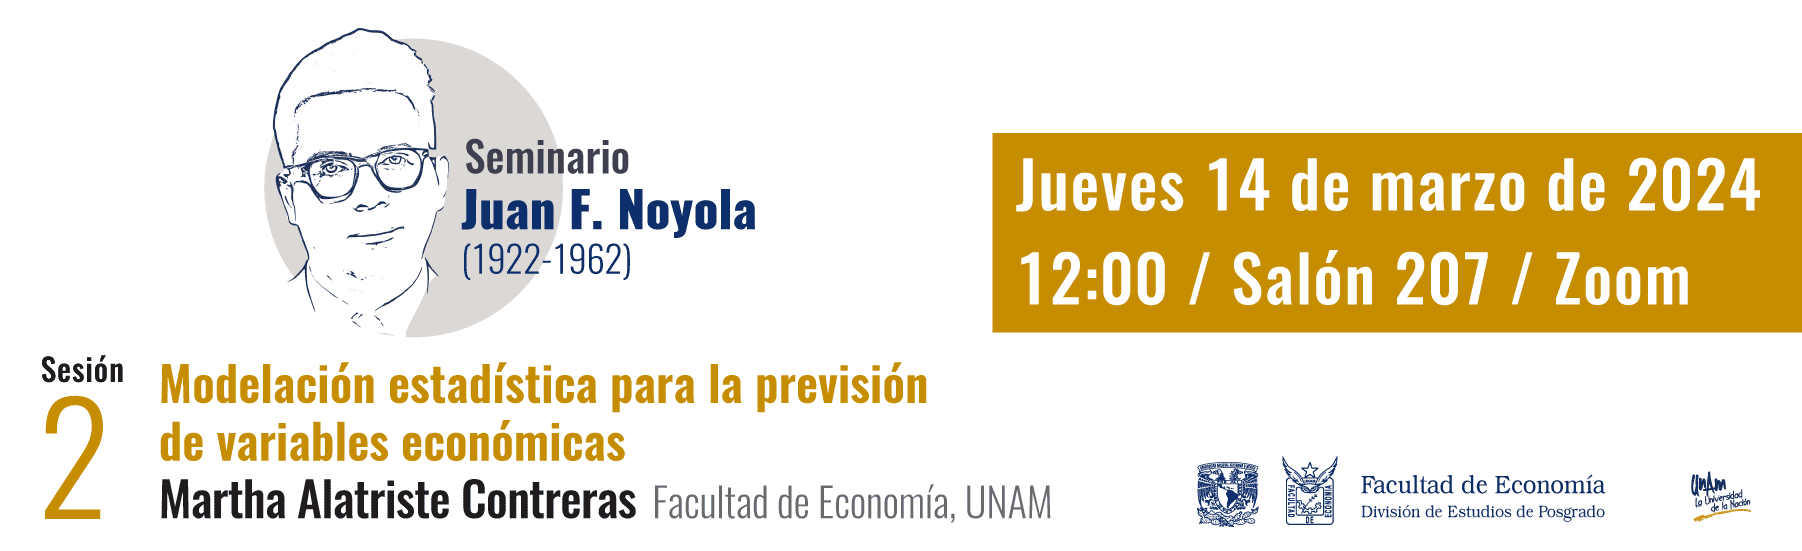 Seminario Juan F. Noyola, sesión 2, jueves 14 de marzo, 12:00, salón 207, Zoom